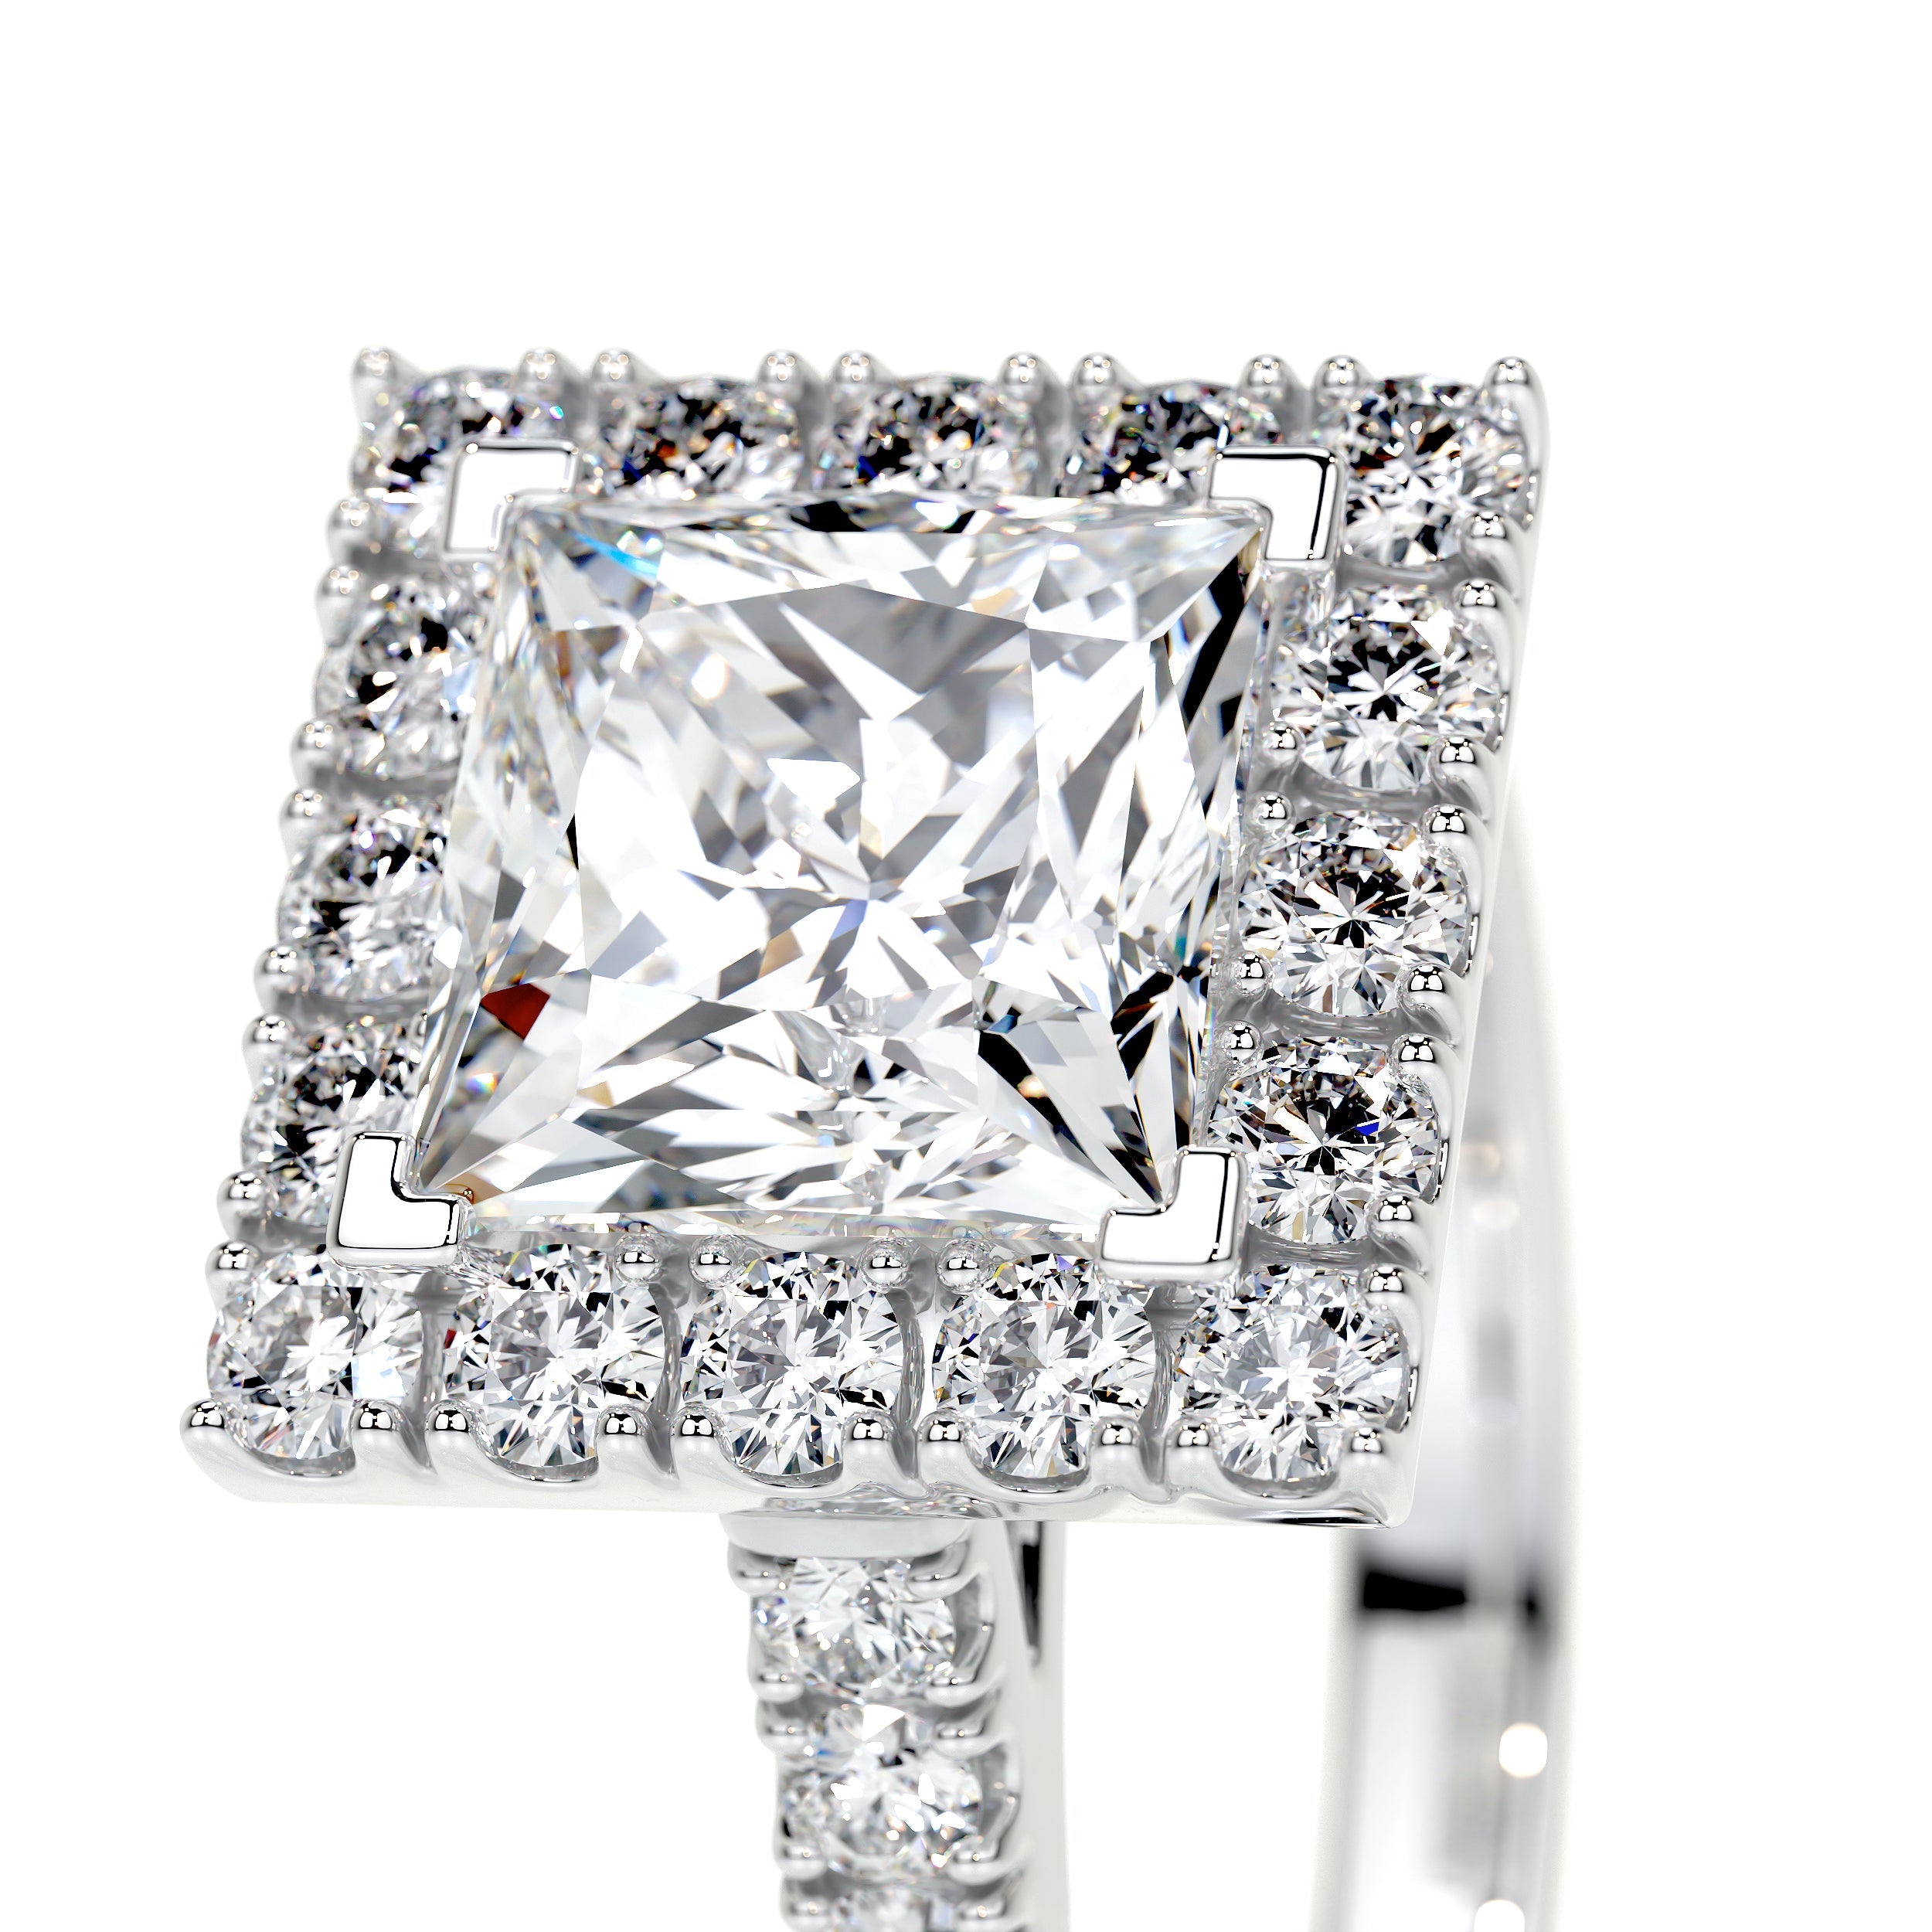 Patricia Lab Grown Diamond Ring   (2.5 Carat) -18K White Gold